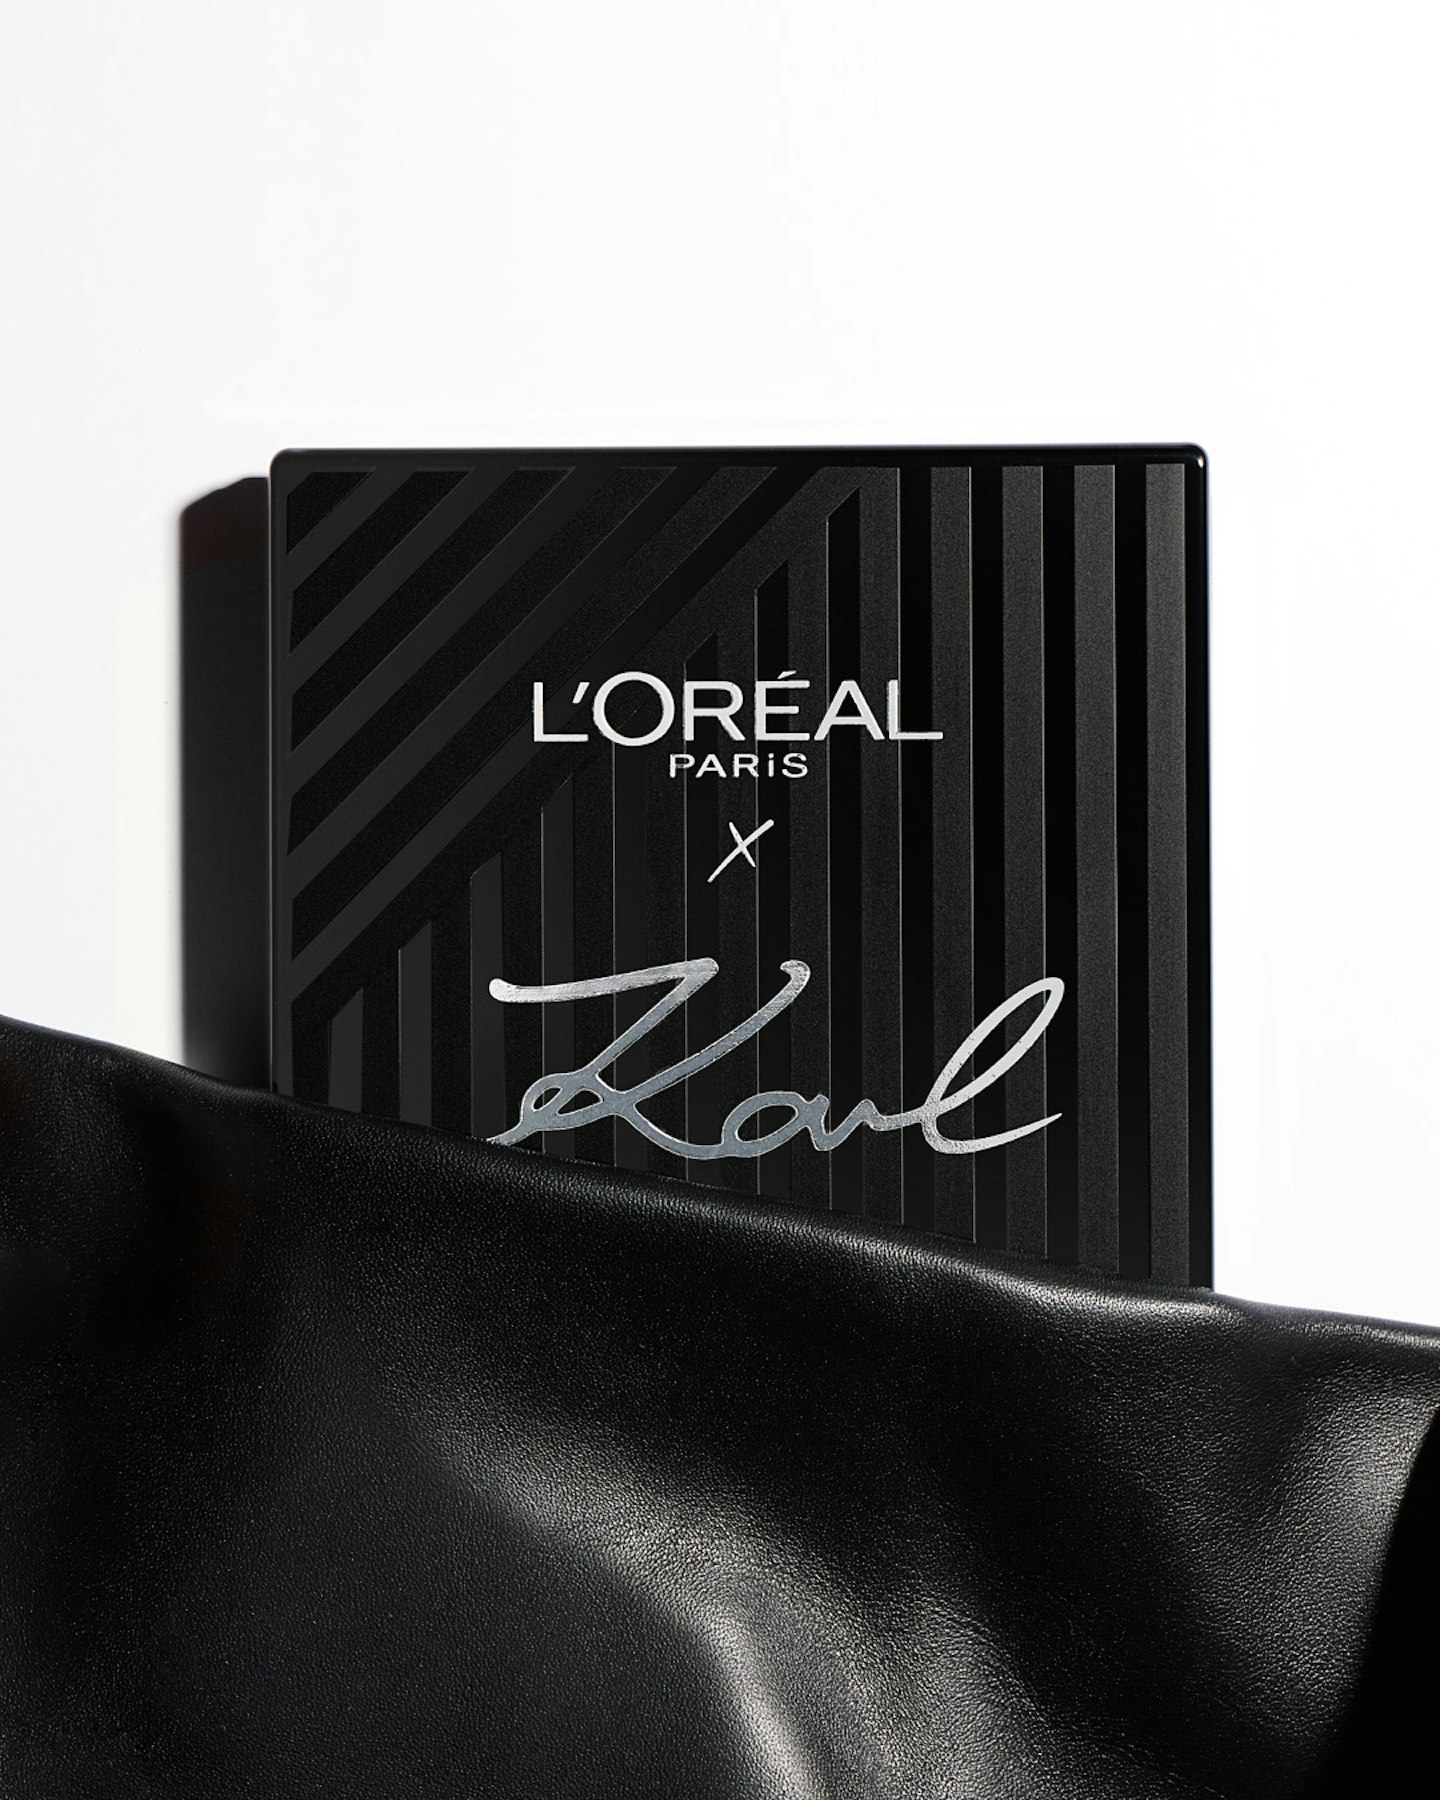 Karl Lagerfeld x L'Oreal Paris Packaging